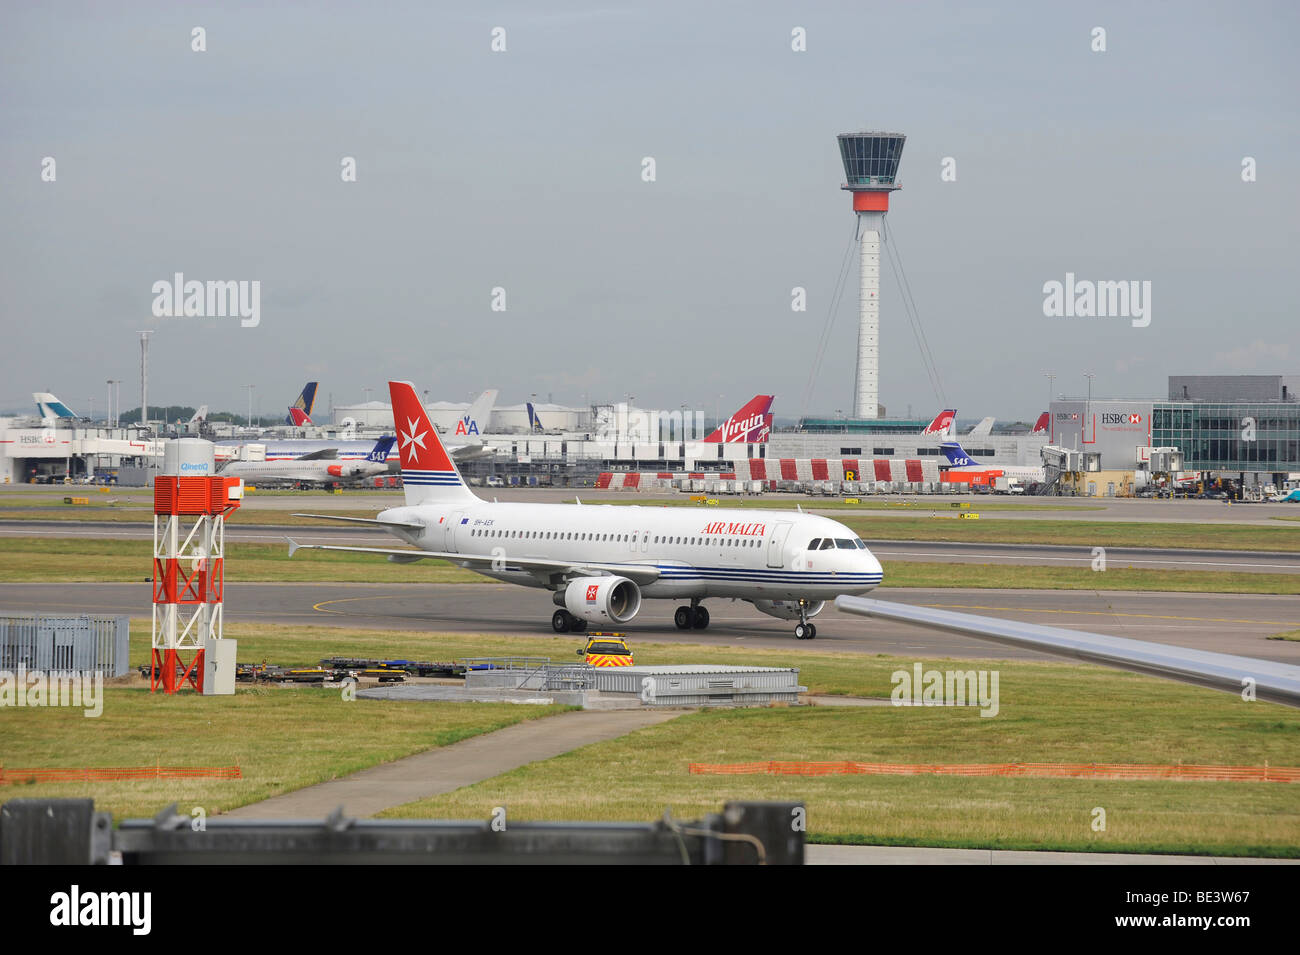 ATC, del controllo del traffico aereo tower, BAA Heathrow International Airport Terminal 4 di Londra, Inghilterra, Regno Unito, Europa Foto Stock